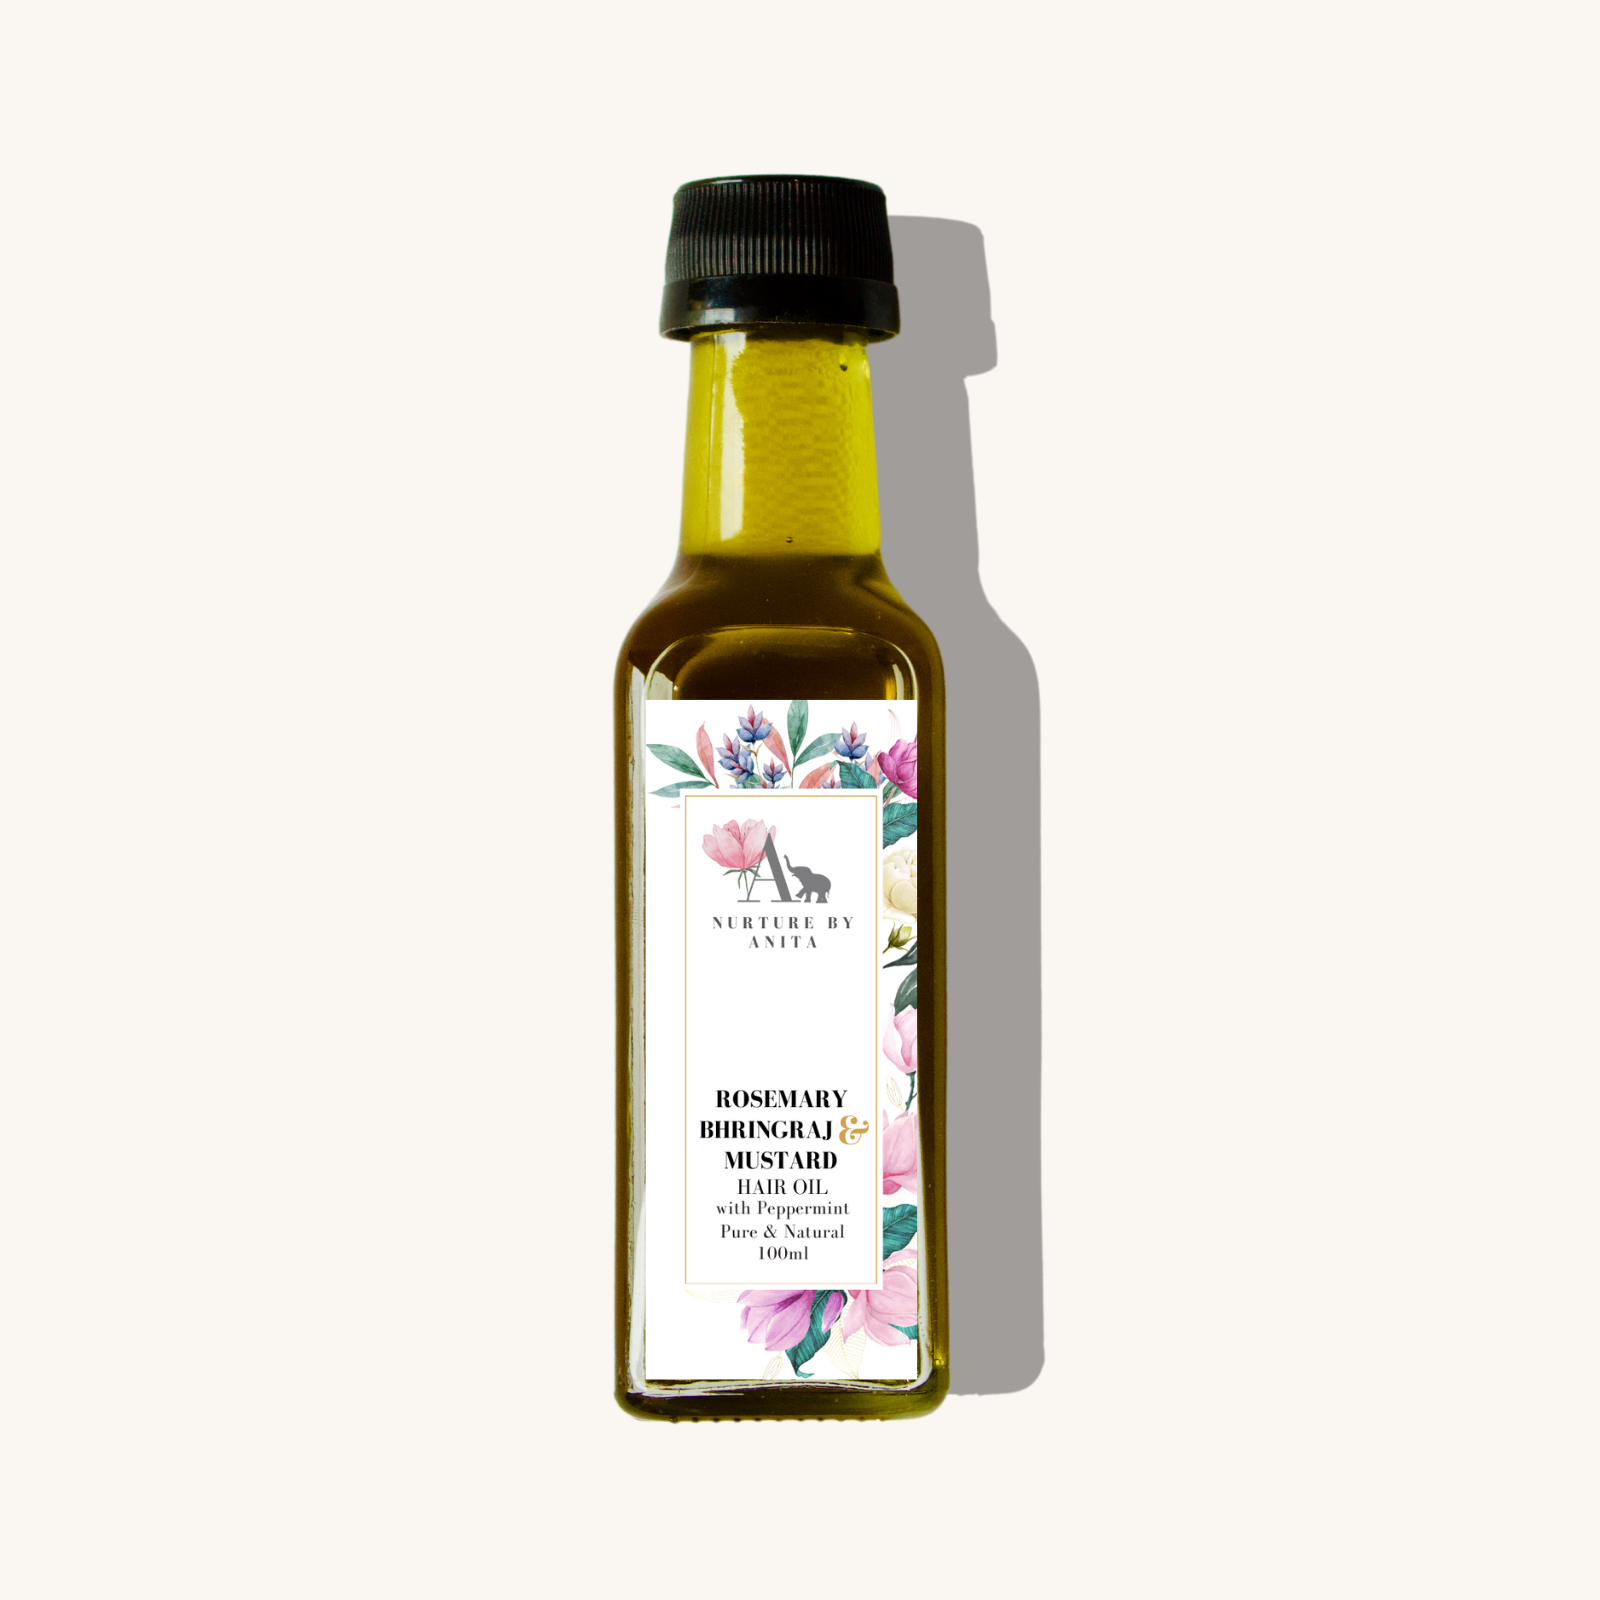 Rosemary Bhringraj & Mustard Hair Oil